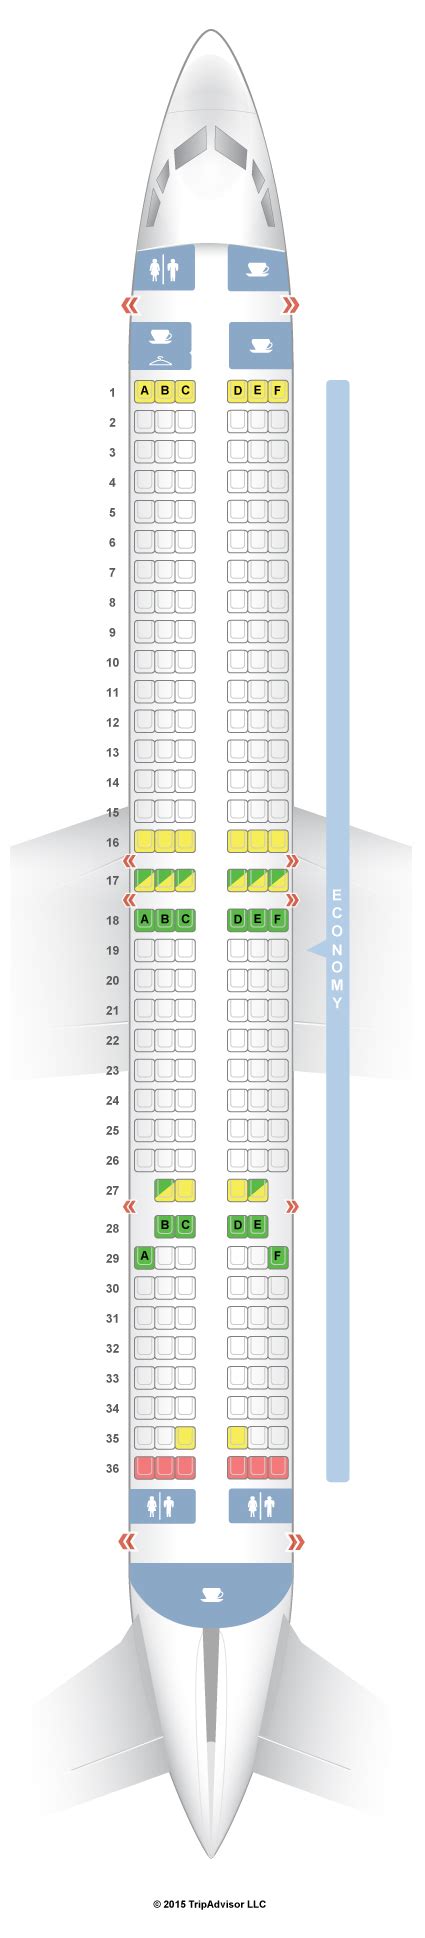 Boeing Seating Chart Jet Airways Cabinets Matttroy